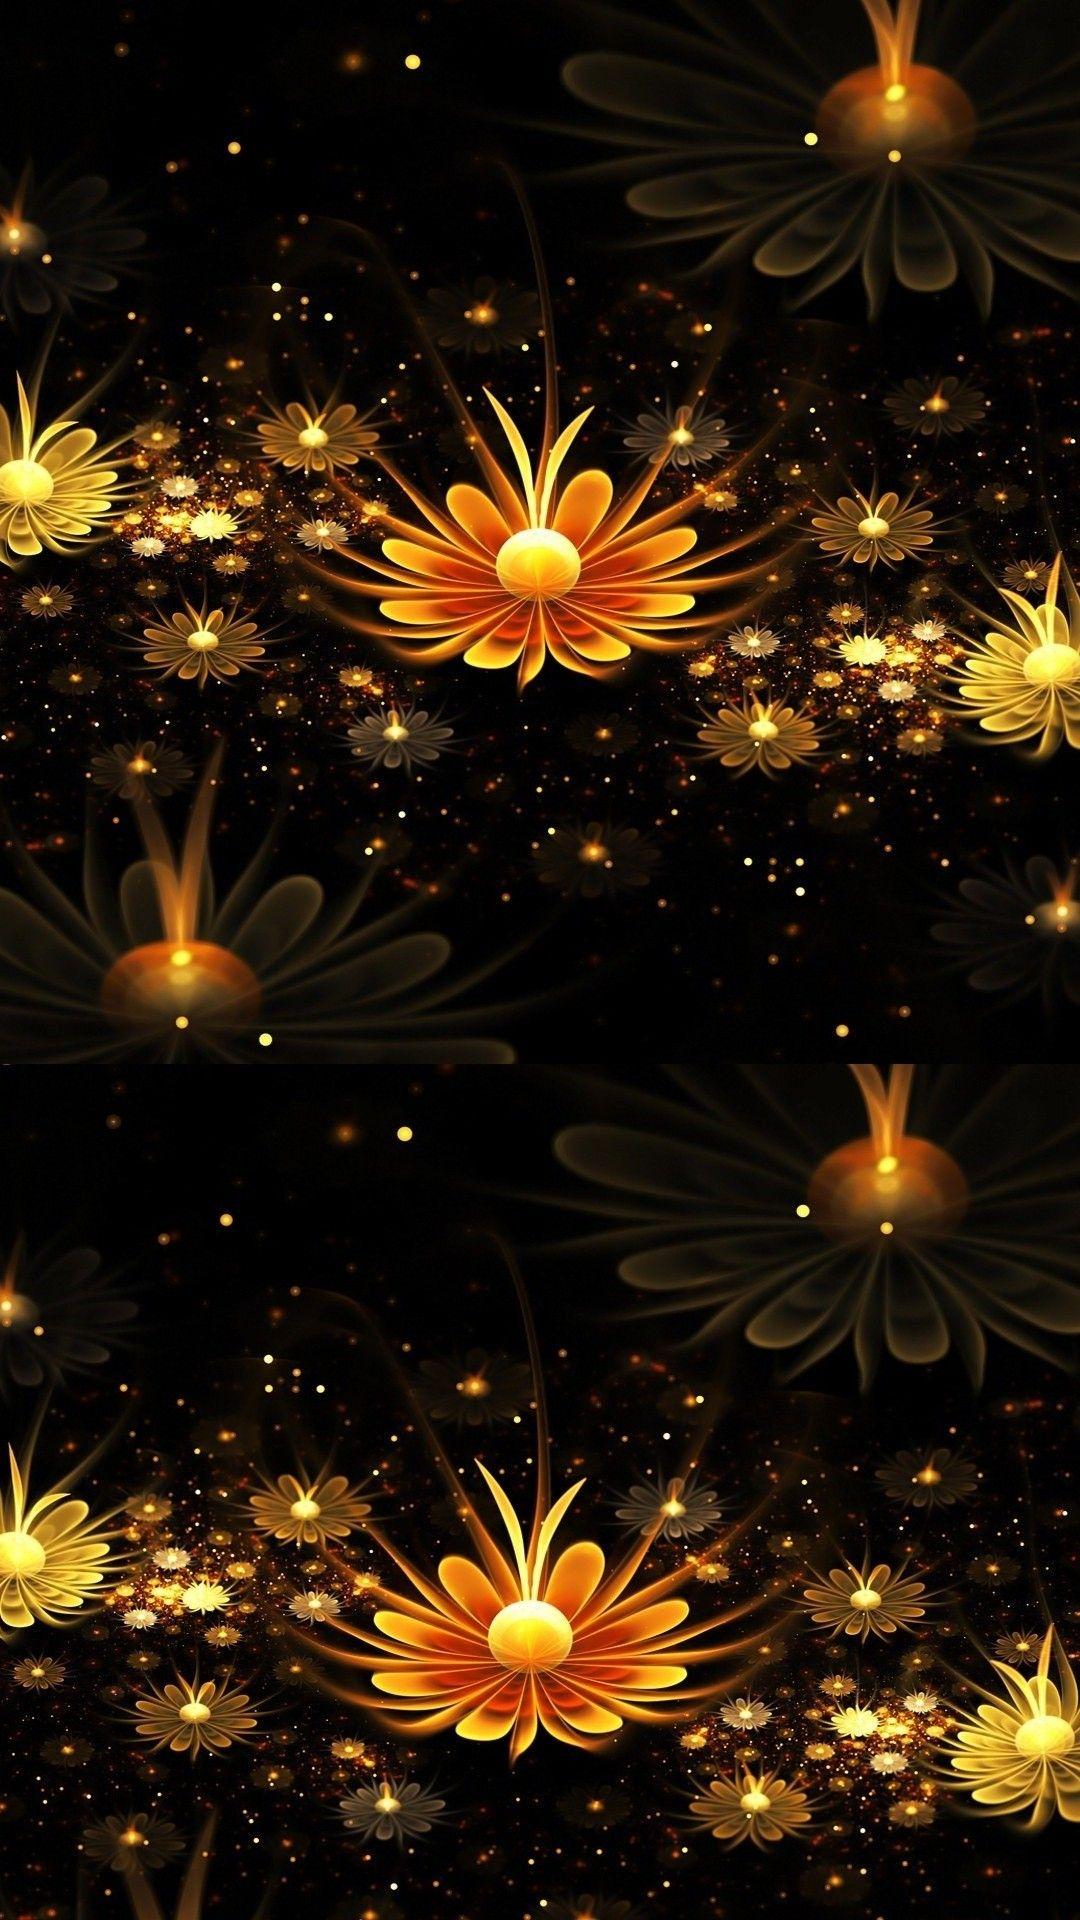 3D Flower Wallpaper For Mobile Android Gold Flower